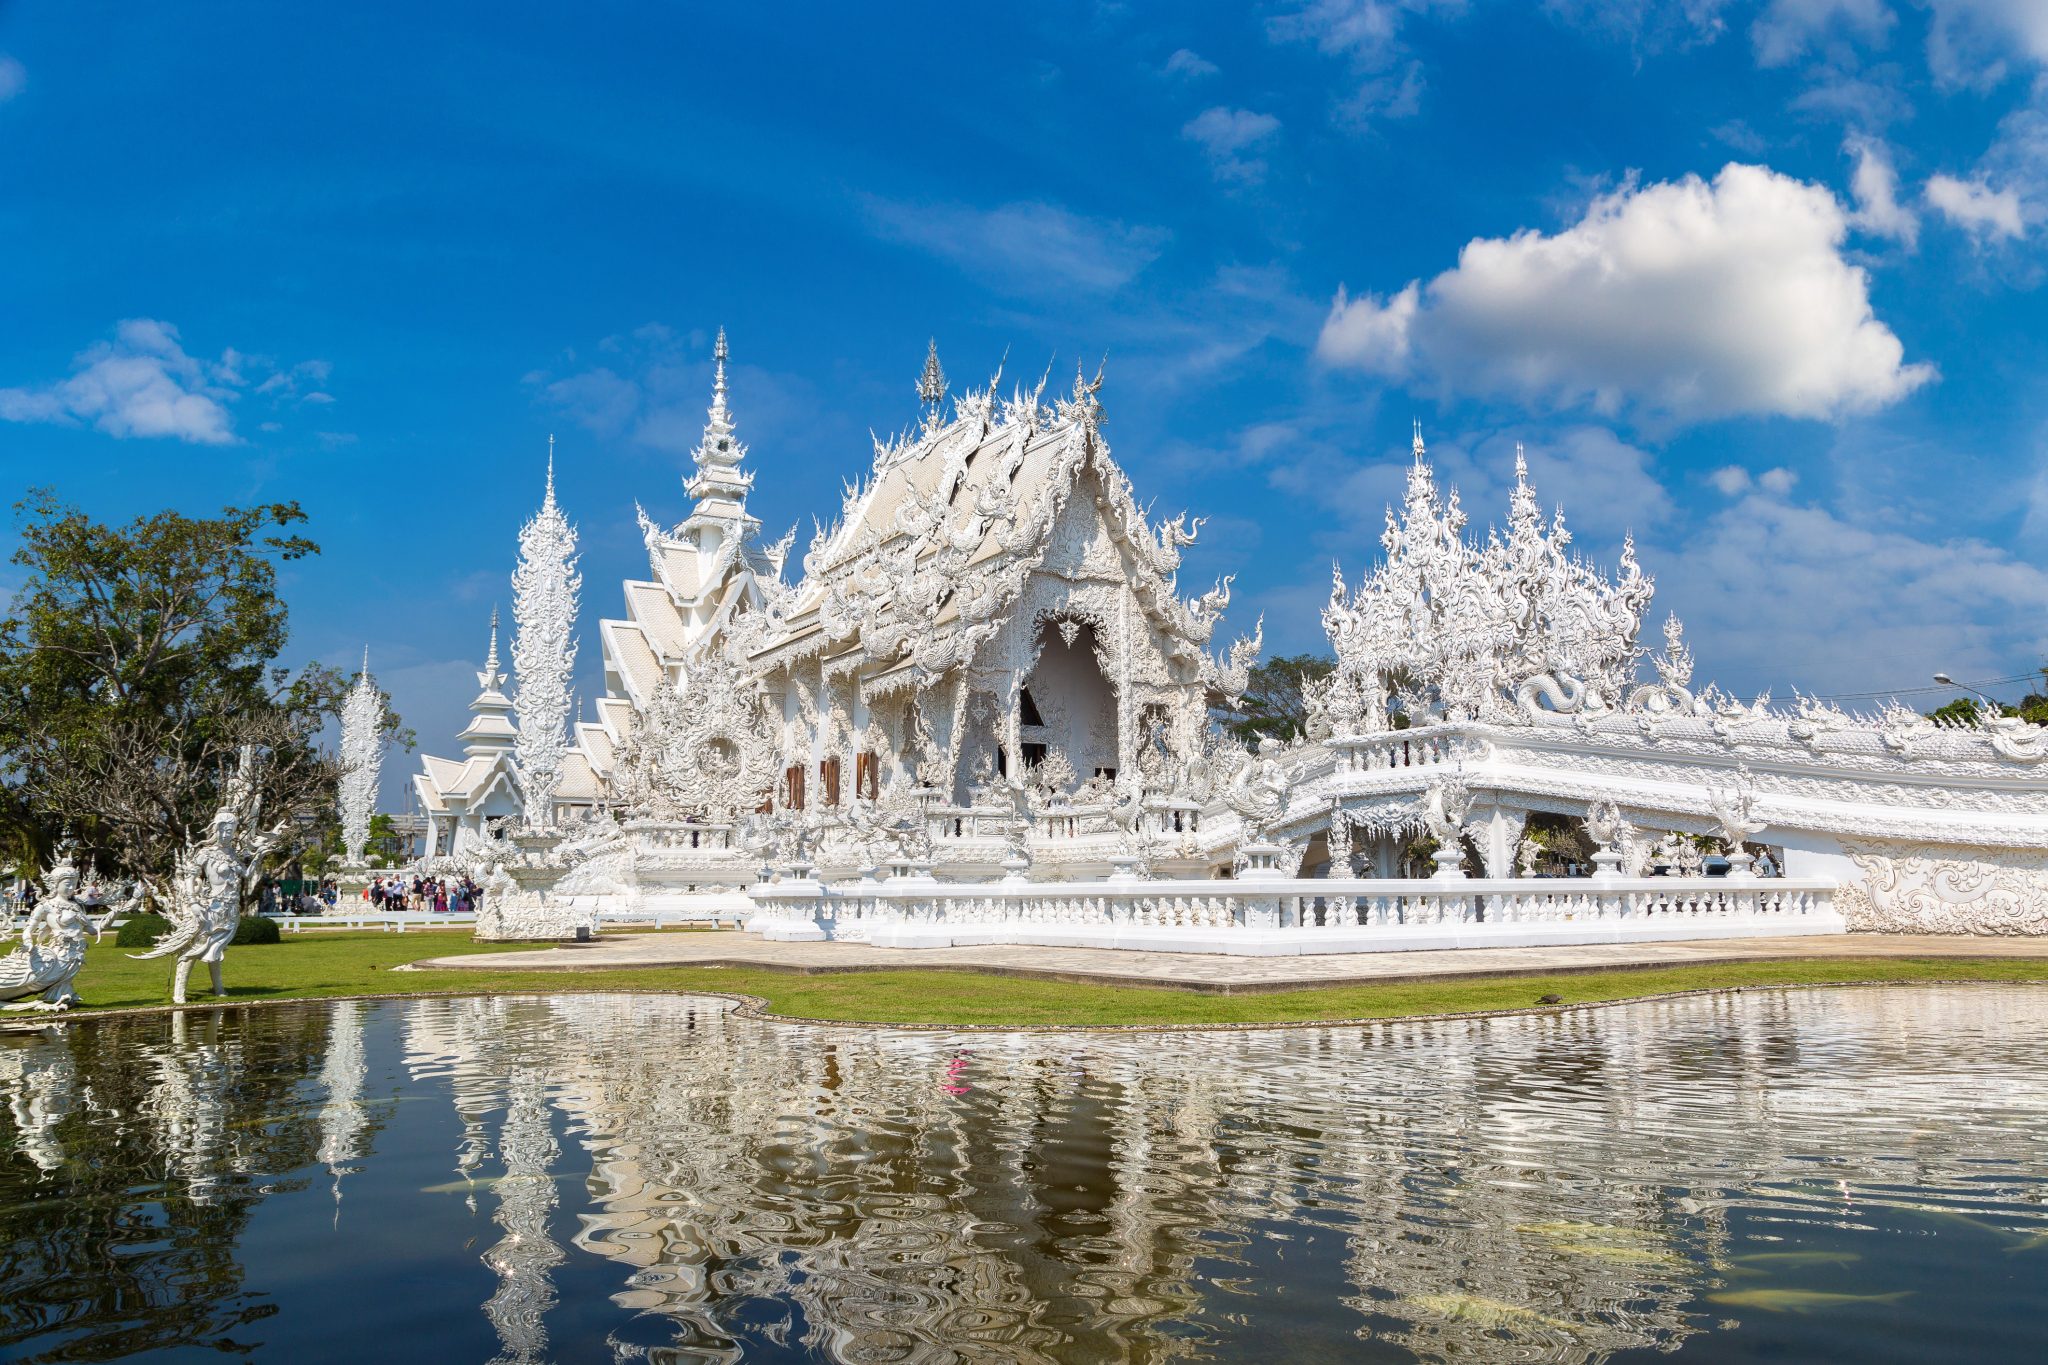 Thailand’s Most Unique Temple: Wat Rong Khun